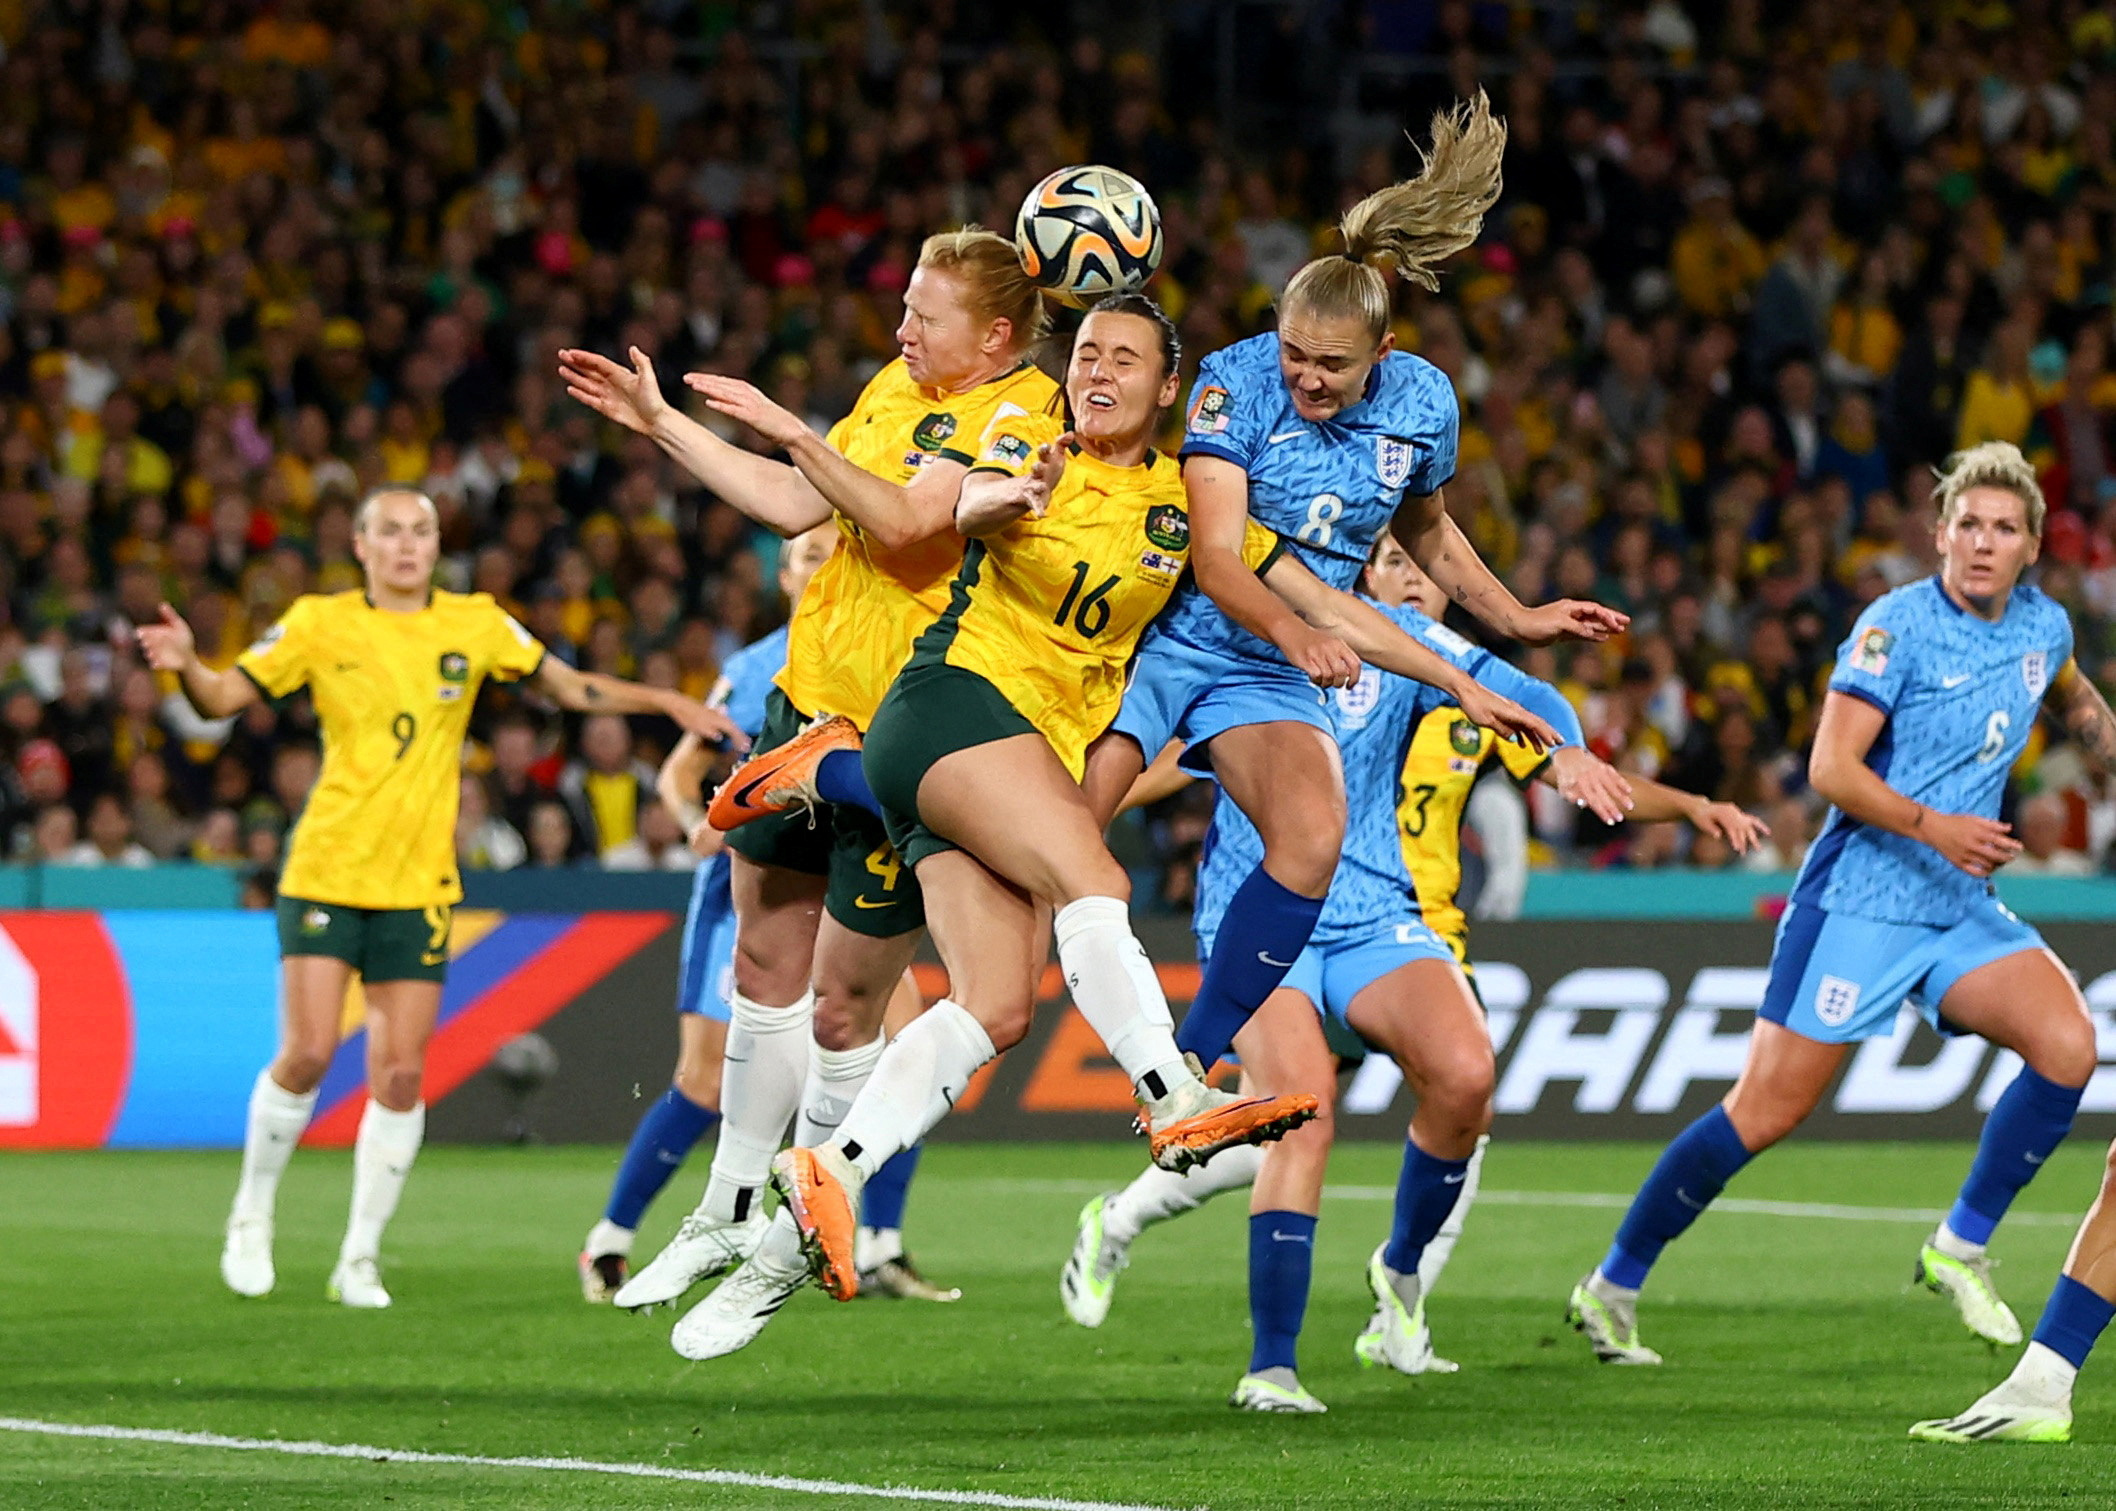 Παγκόσμιο Κύπελλο ποδοσφαίρου γυναικών: Η Αγγλία απέκλεισε τη διοργανώτρια Αυστραλία για τον πρώτο της «παγκόσμιο» τελικό